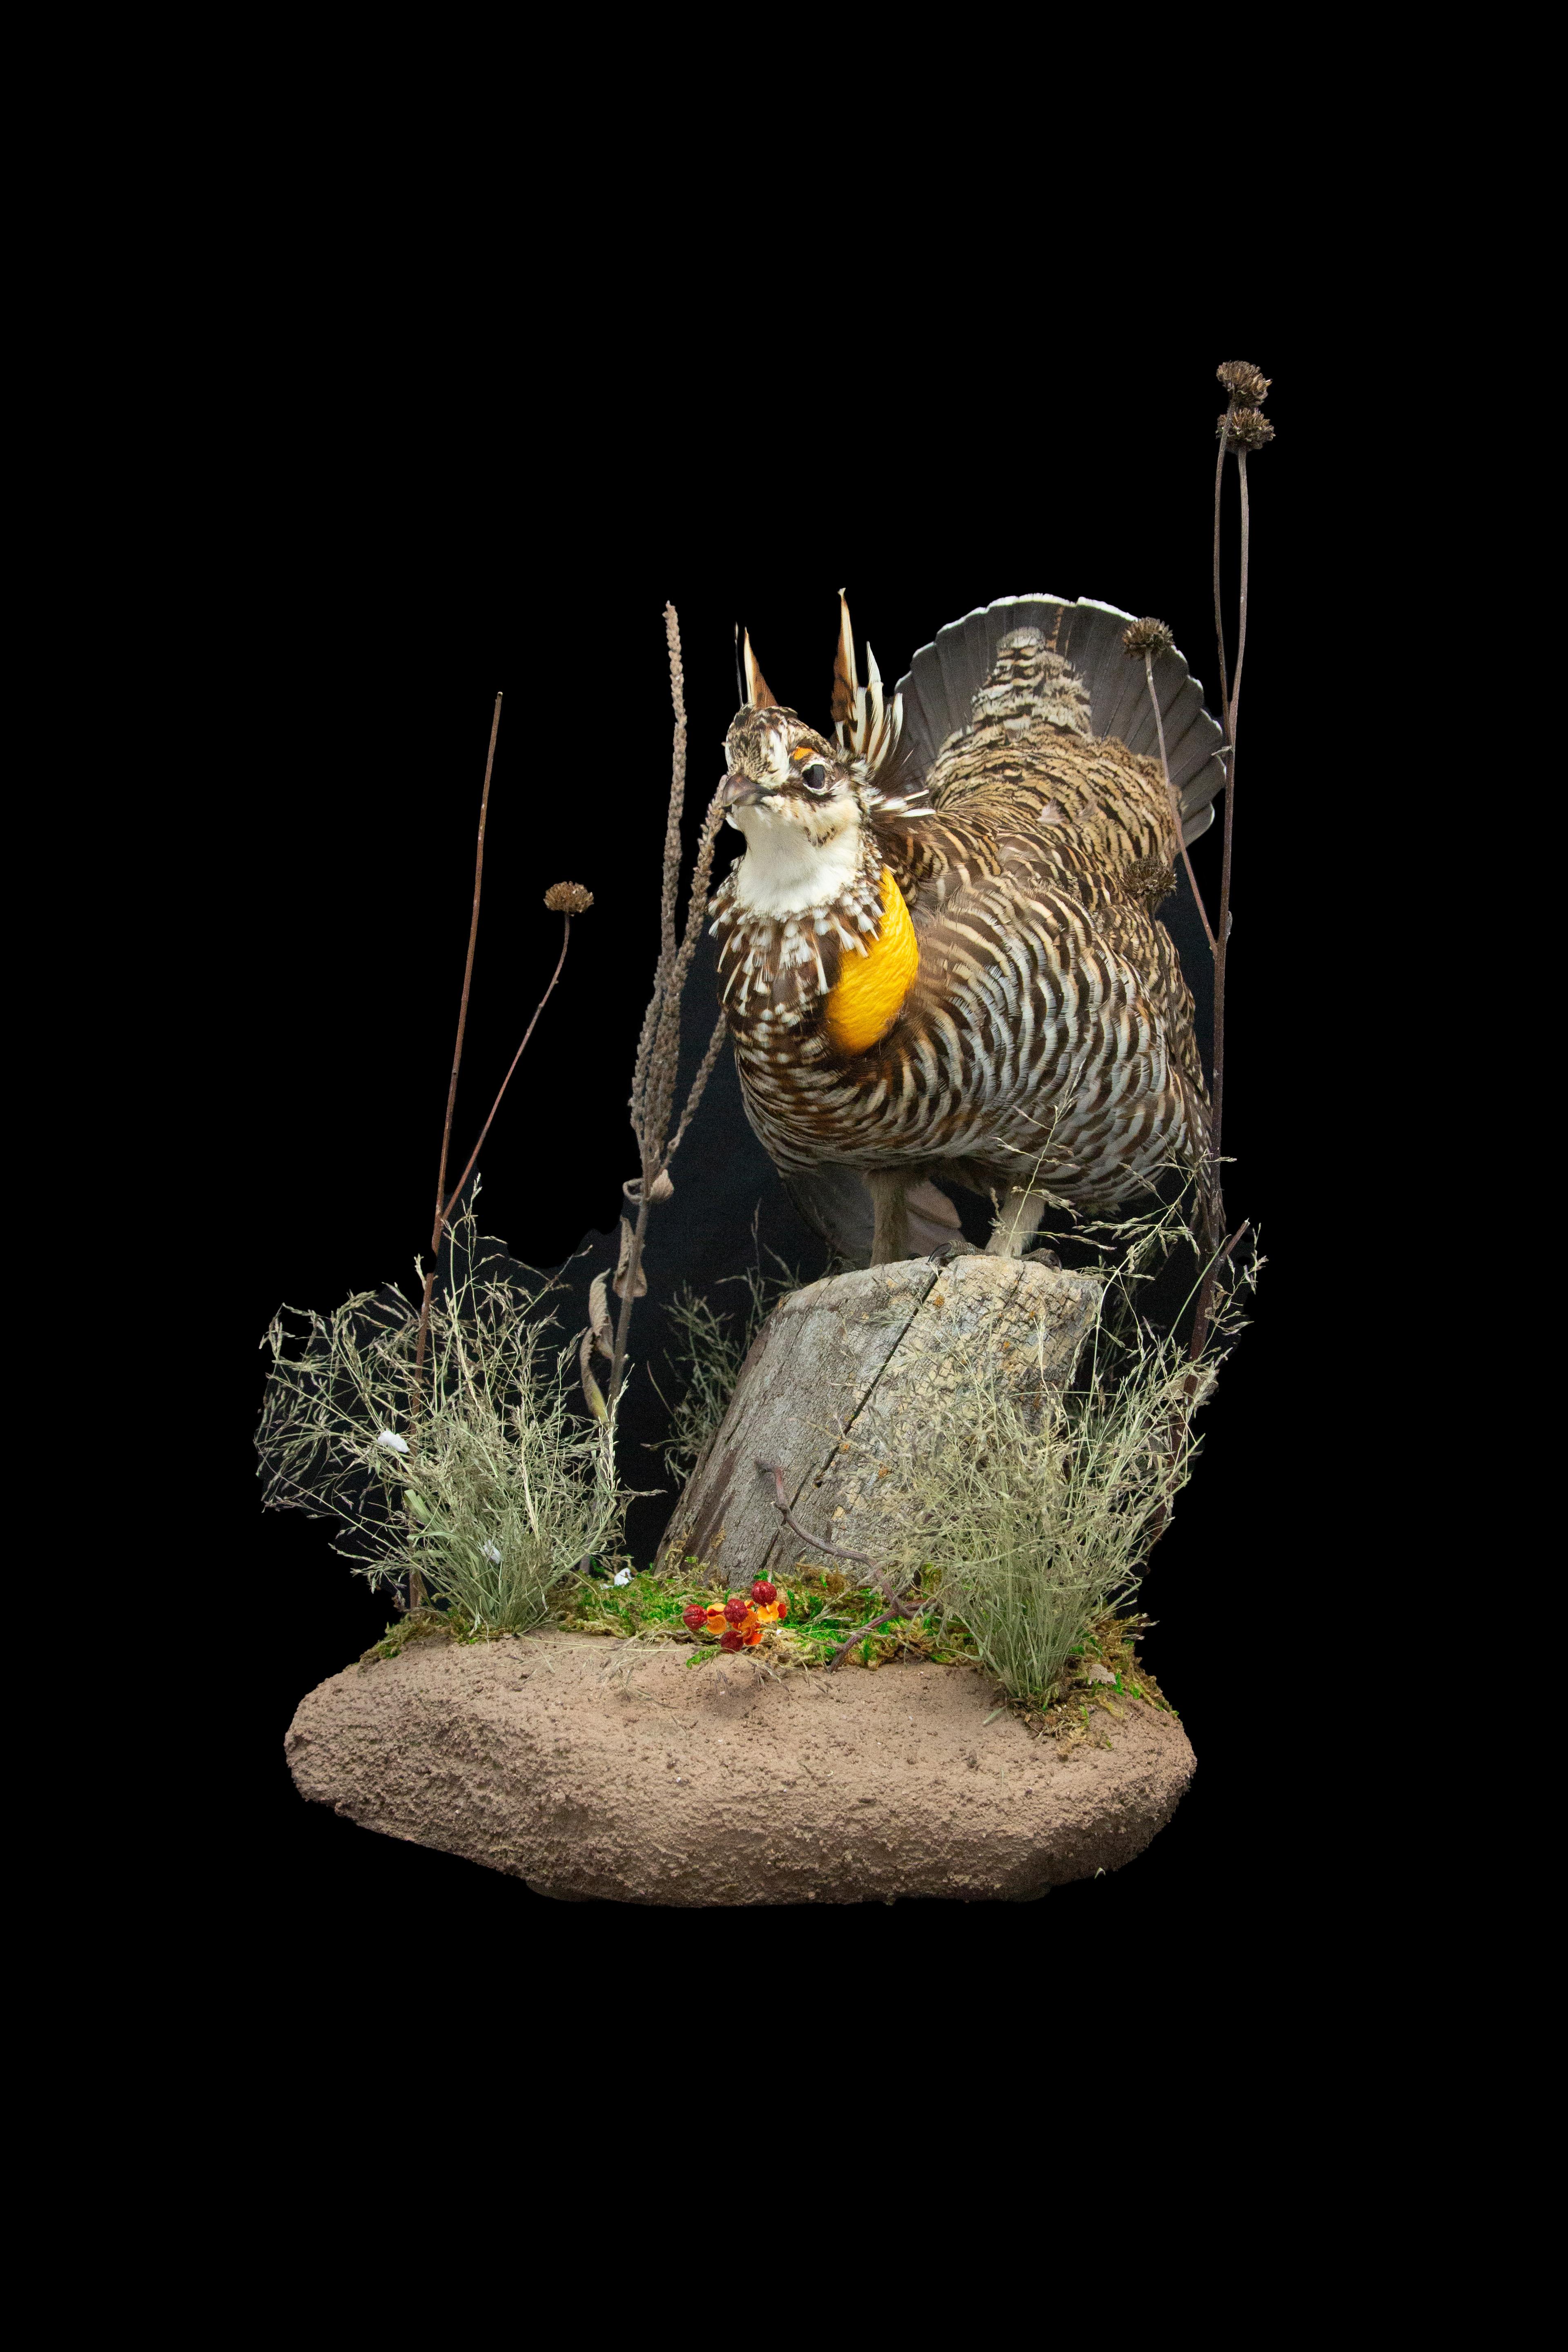 Ce superbe tétras taxidermique est monté sur une base naturaliste, créant une présentation réaliste qui met en valeur la beauté et la majesté de cet incroyable oiseau. Mesurant 13